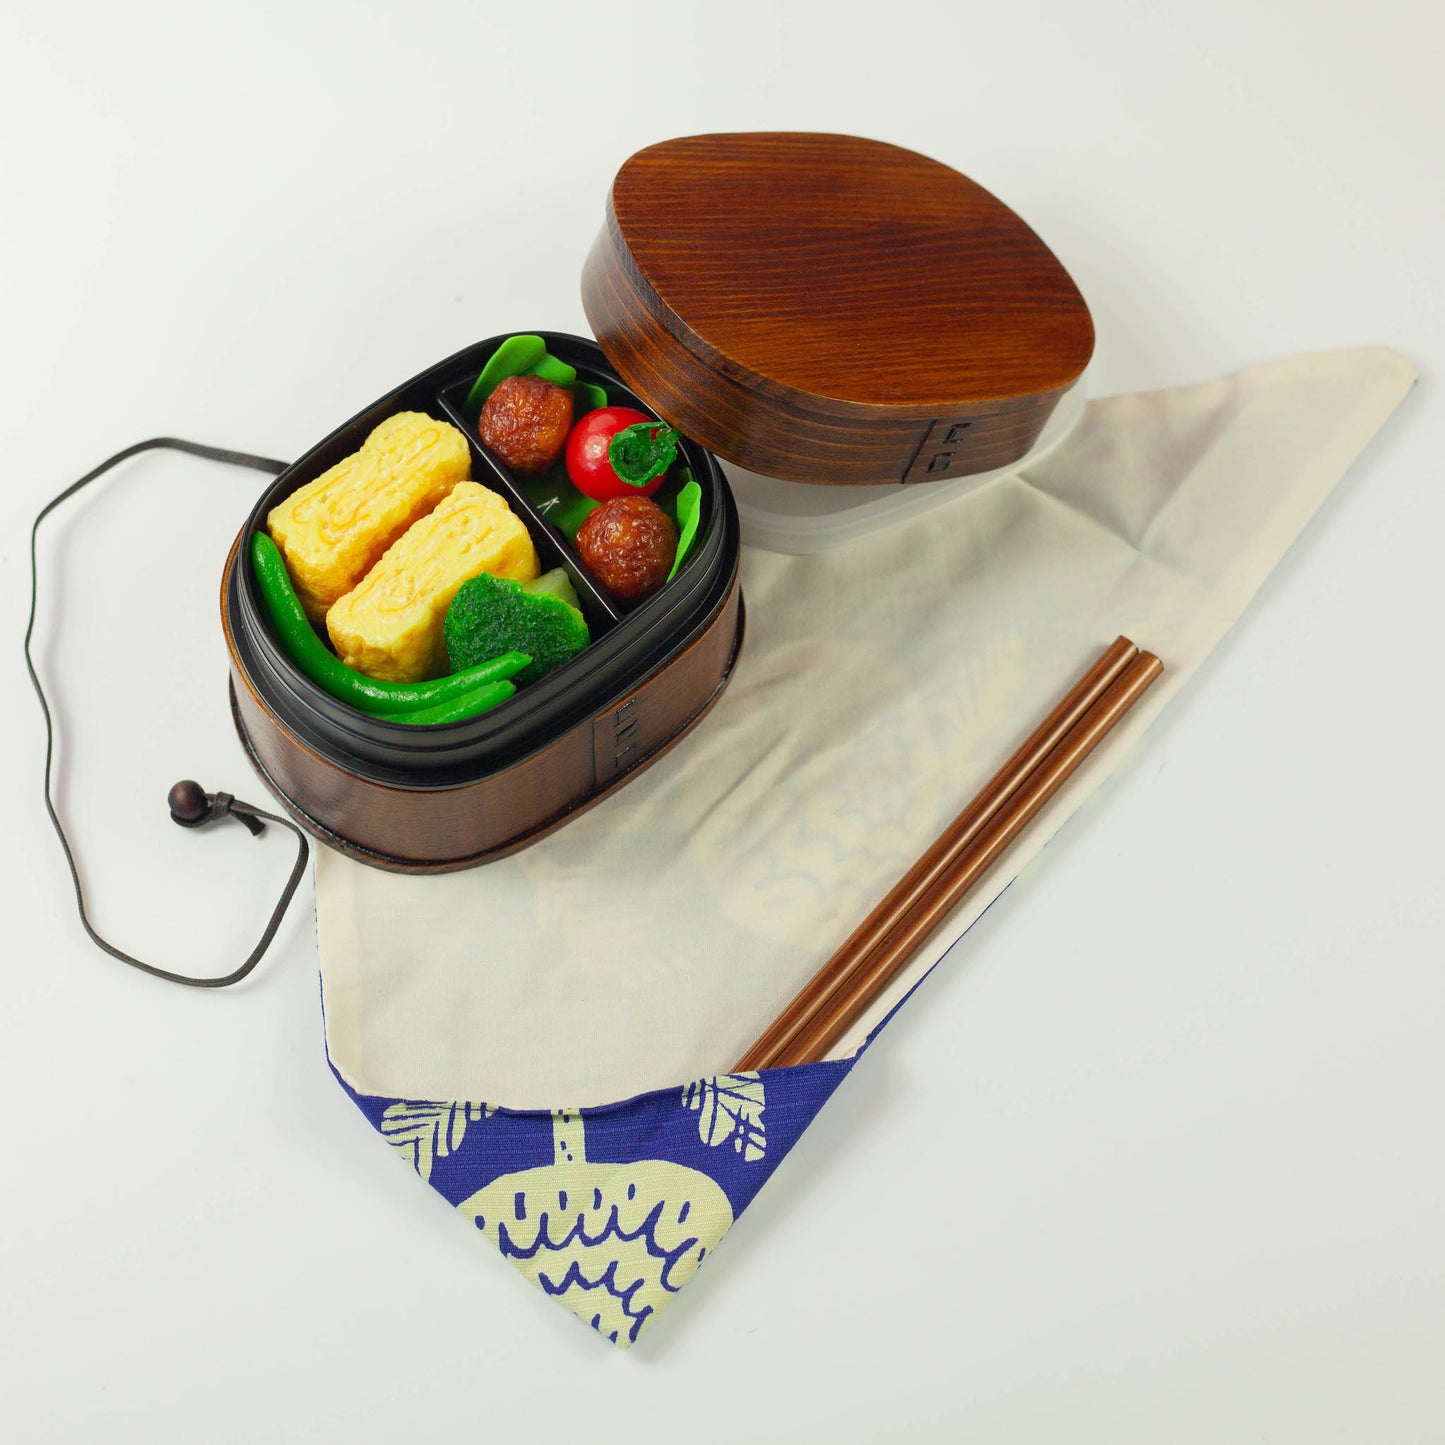 Original Bento-Paket | Chrysanthemenblau